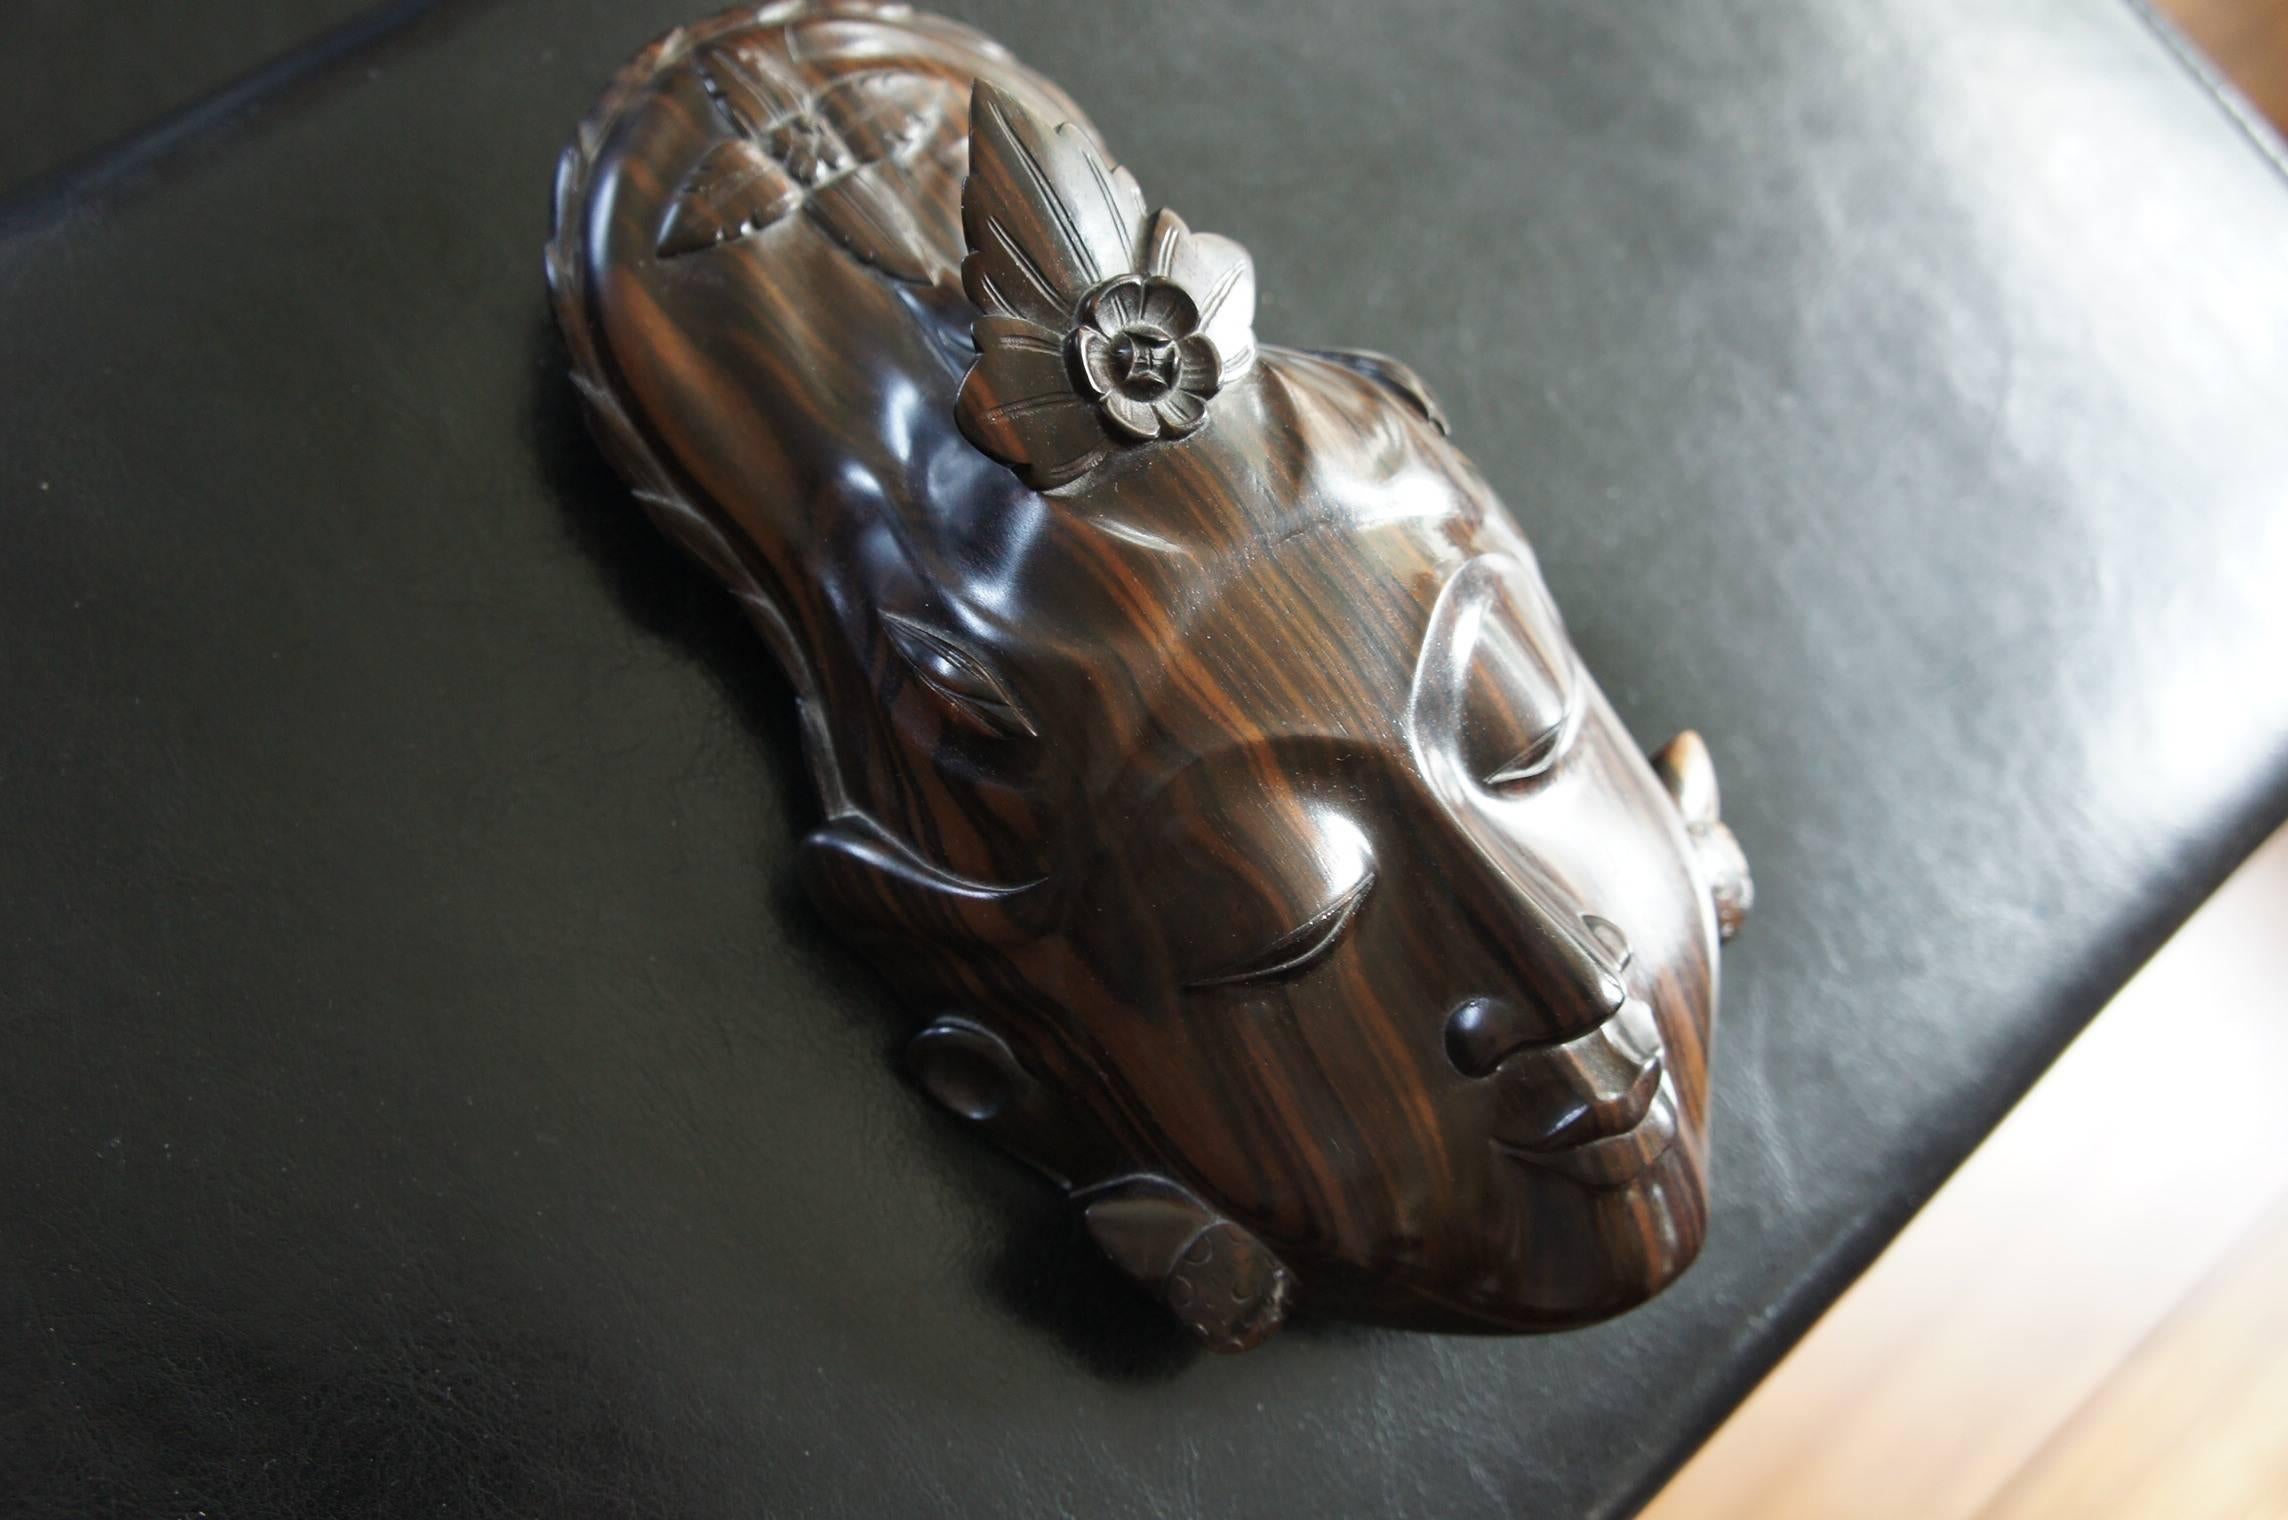 Atemberaubende & heitere Maske aus einer der teuersten Holzarten der Welt. 

Seit dem Embargo für das Abholzen von Makassar-Ebenholz ist der Preis für dieses schöne Holz in die Höhe geschossen. Der aktuelle Preis pro Kubikmeter dieses